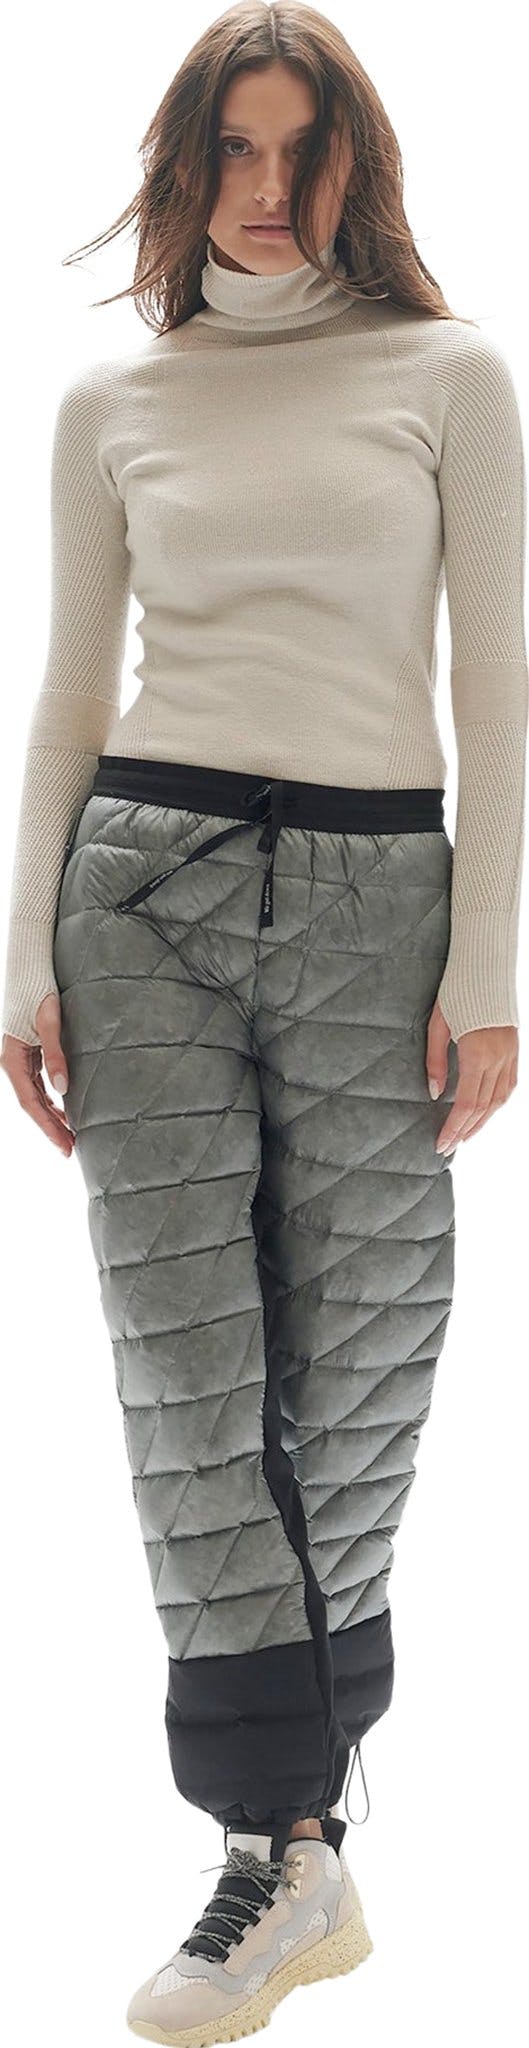 Numéro de l'image de la galerie de produits 4 pour le produit Pantalon de survêtement en duvet hybride - Femme